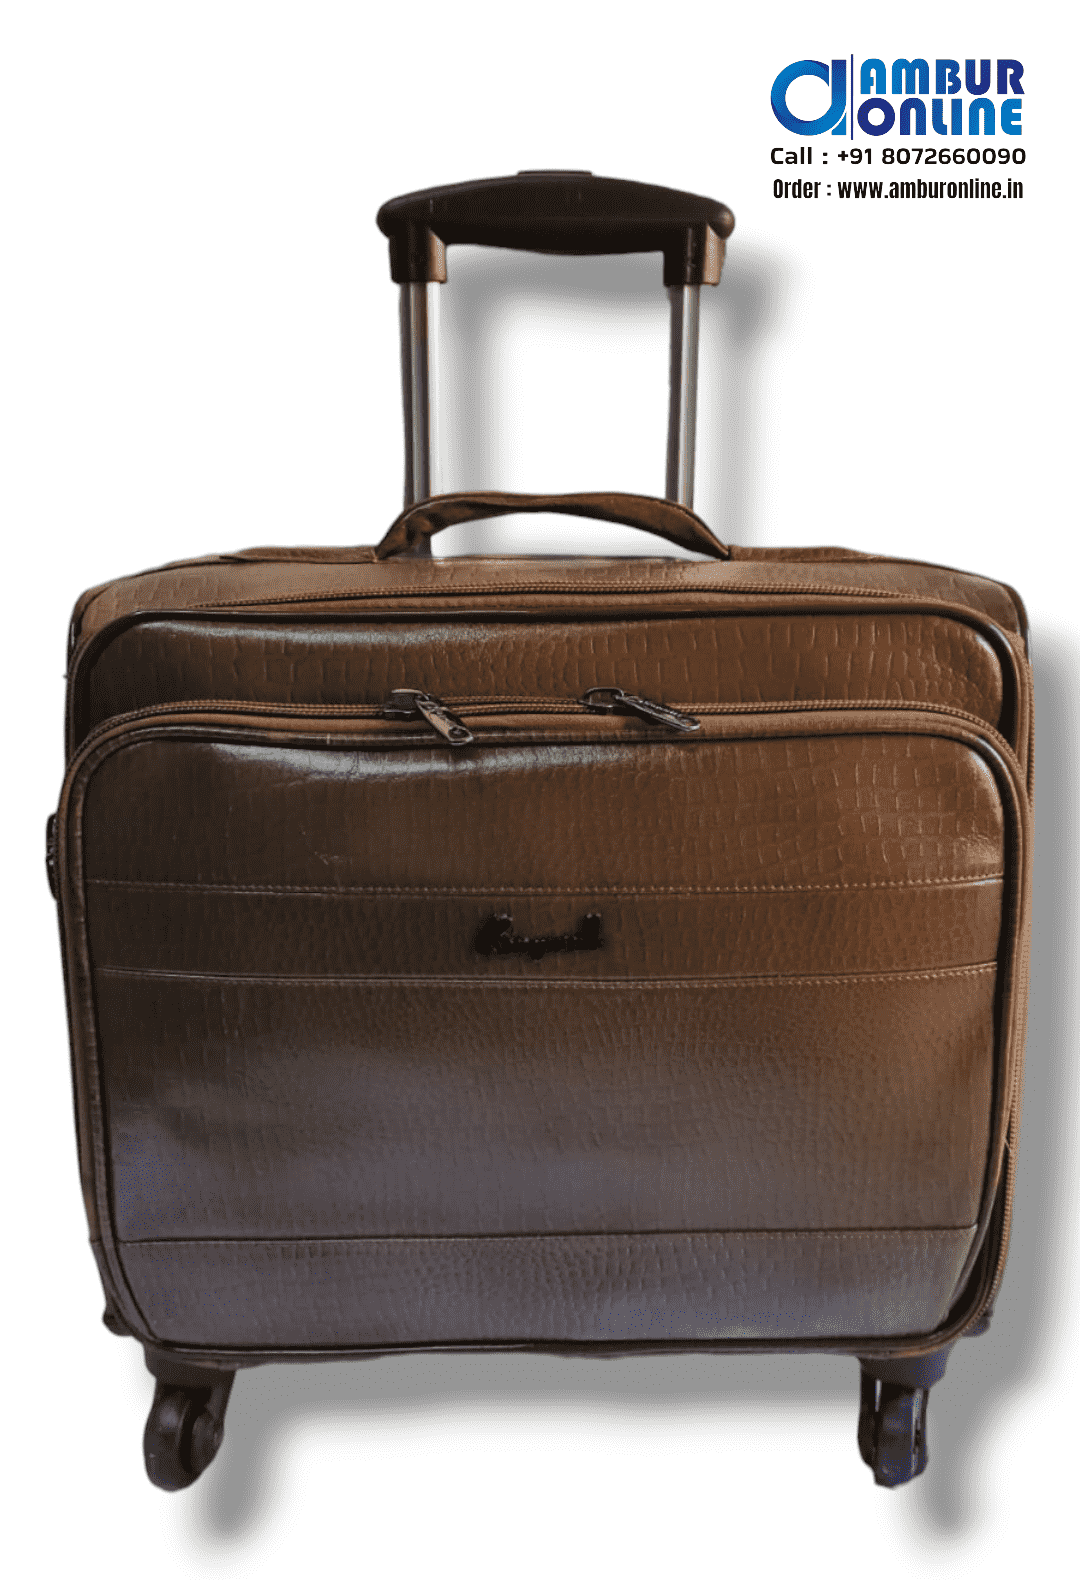 Blue Trolley Bag | 65CM Travel Luggage - Buy Trolley Bags & Travel Luggage  Online - Arrival Luggage